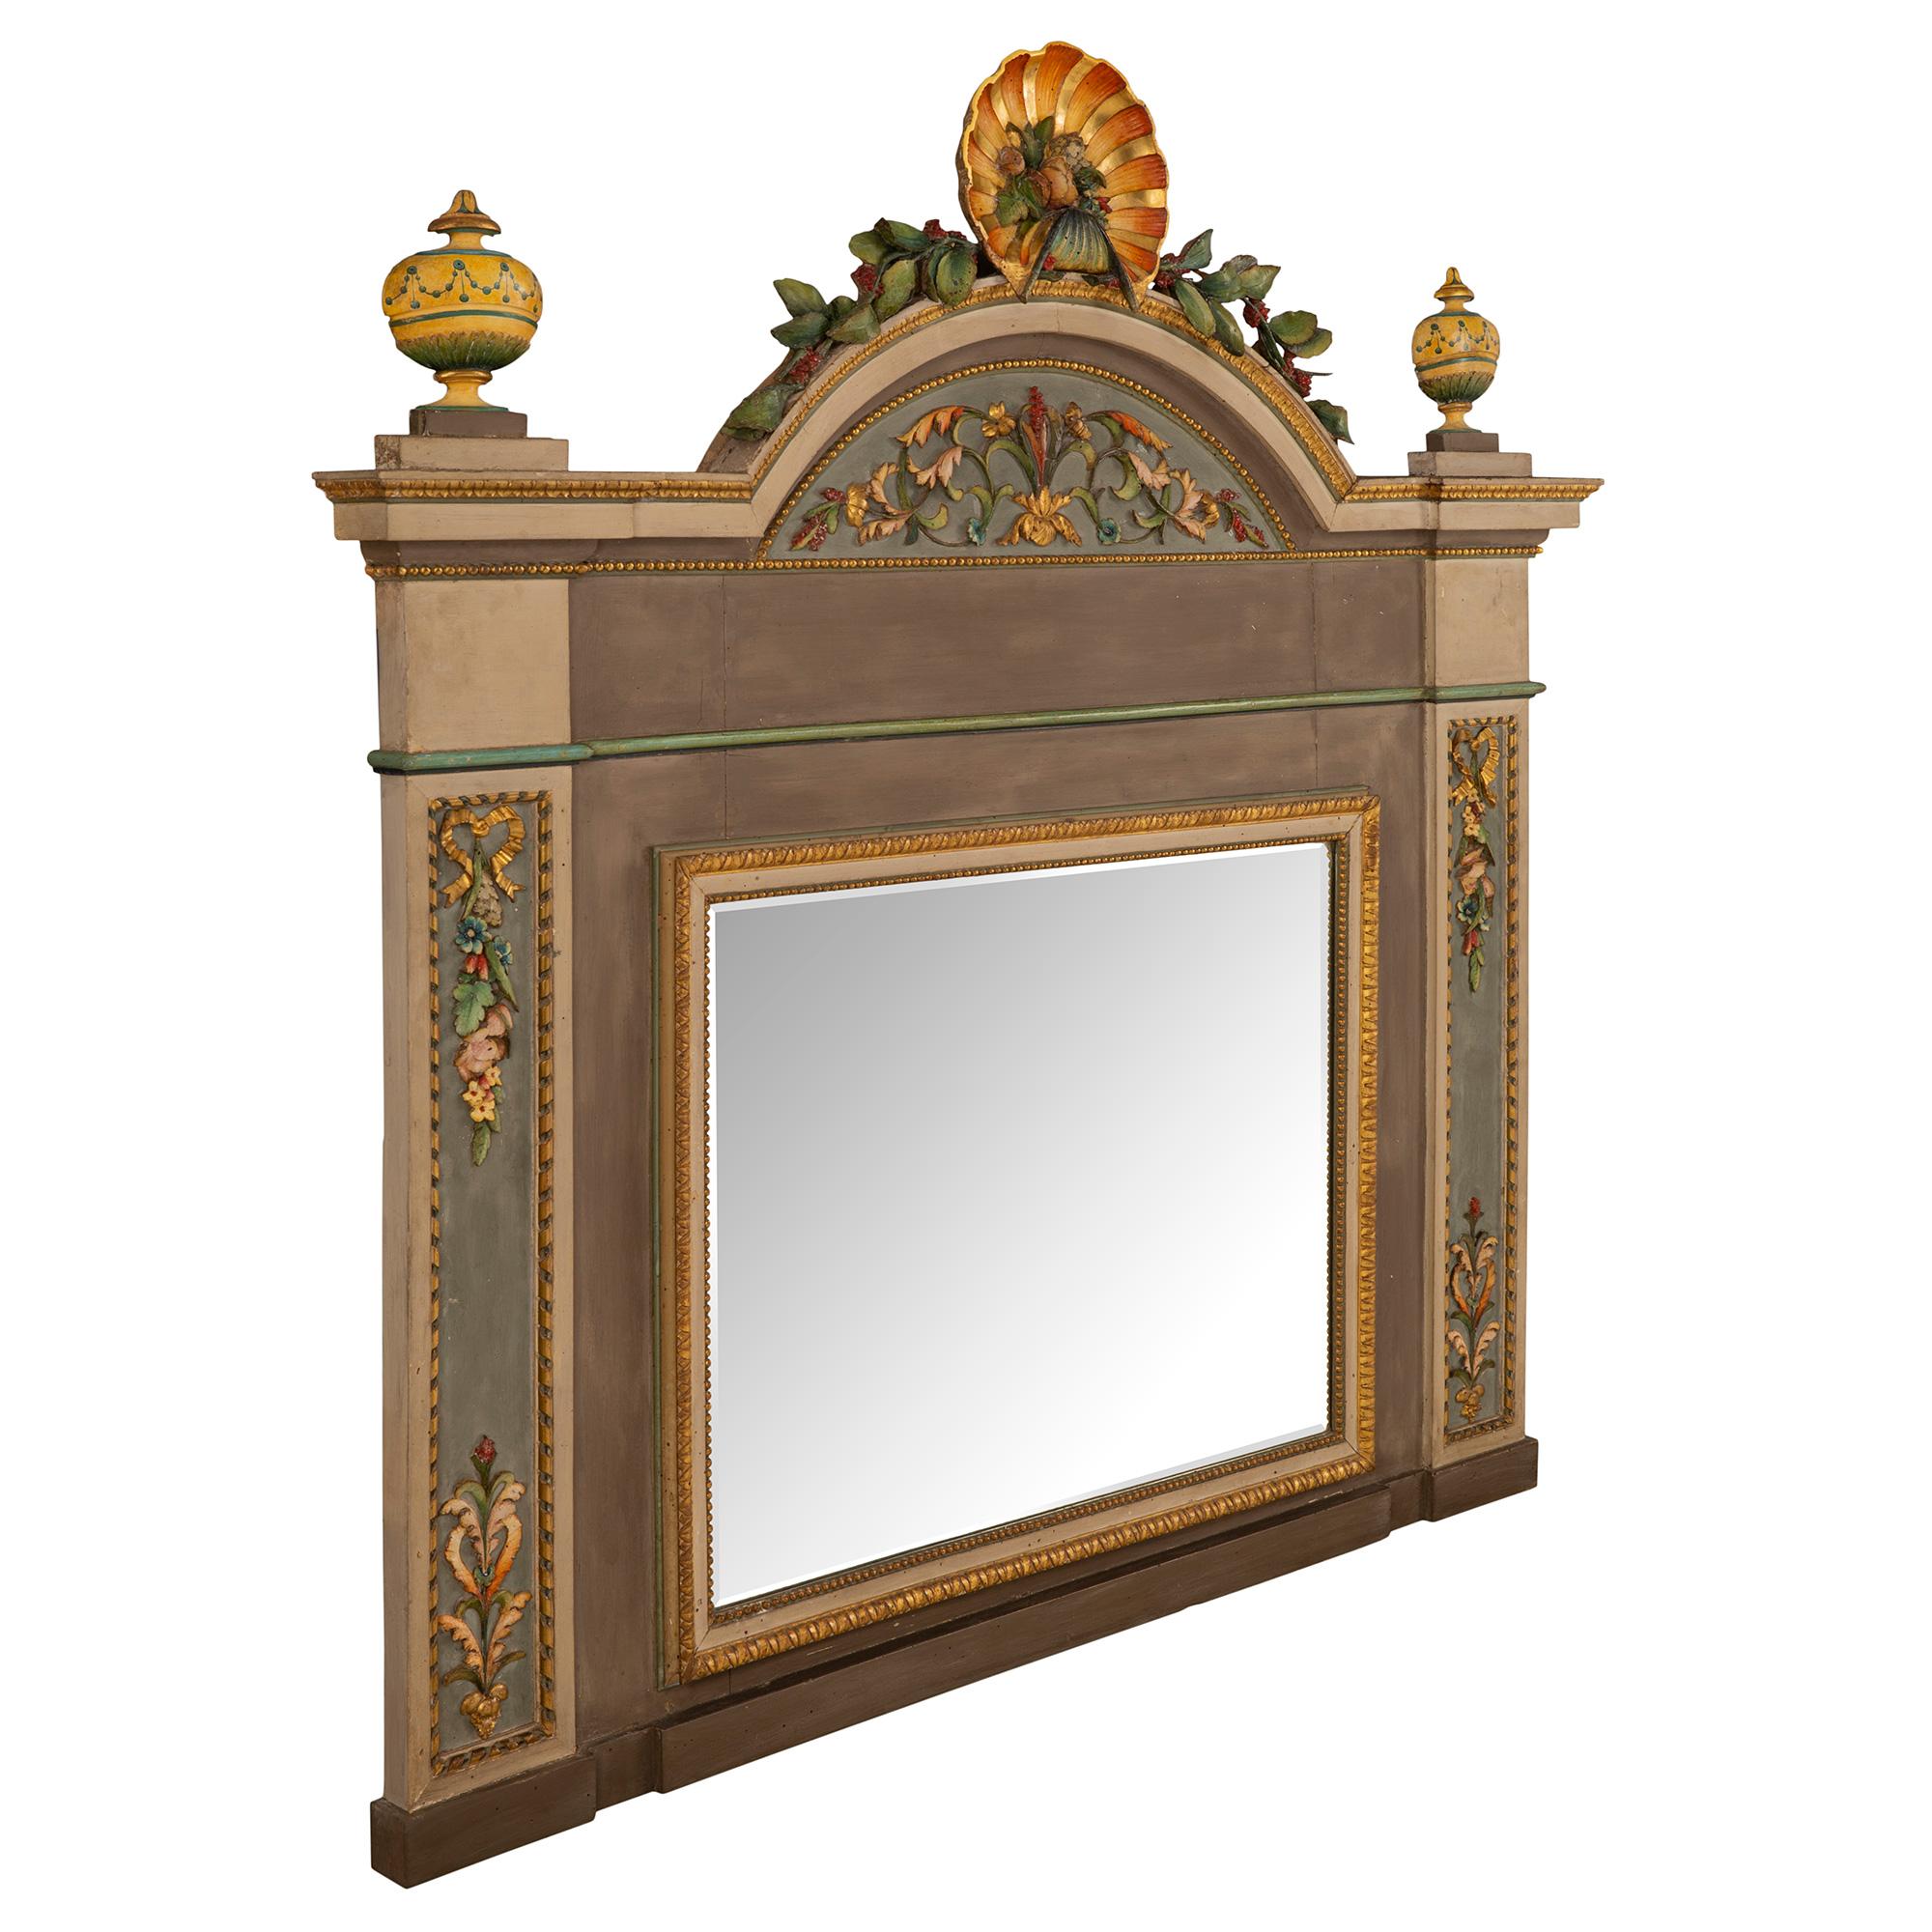 Un beau miroir italien du 18ème siècle d'époque Louis XVI en bois patiné et doré, provenant de Milan. La plaque de miroir biseautée d'origine est encadrée d'une belle bordure perlée et conçue par Cœur de Rai. À la base, on trouve un motif sculpté